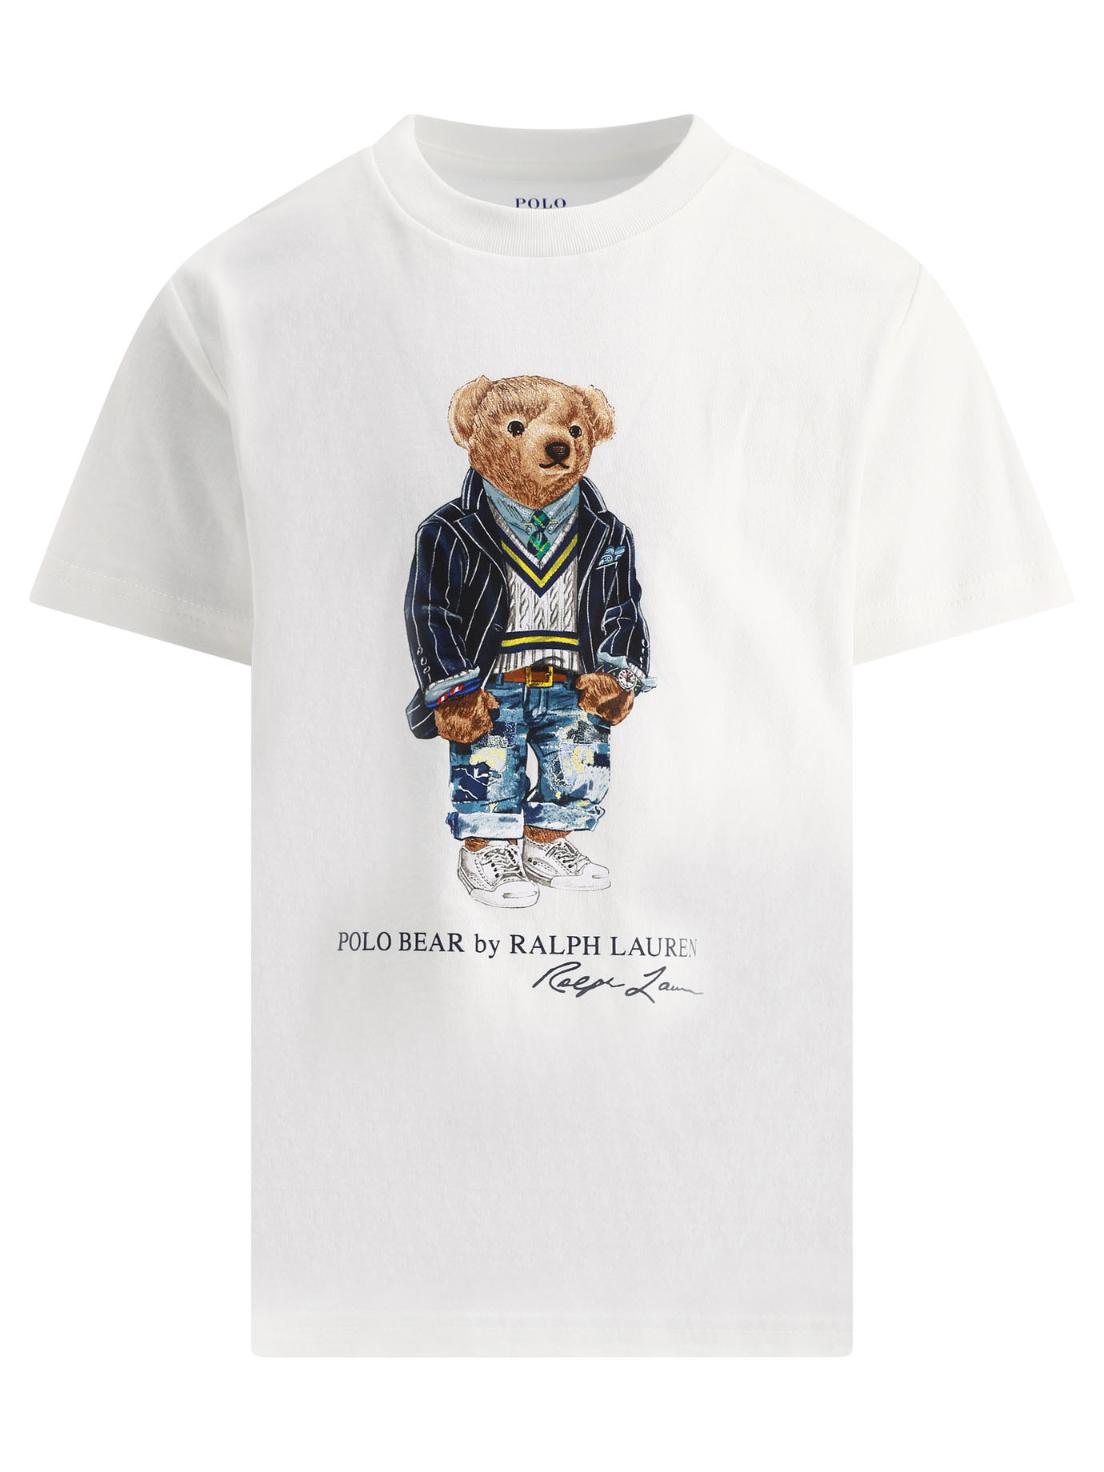 [해외직구 관부가세 포함] Ralph Lauren Kids 화이트 "Polo Bear" t셔츠 865660-001WHITE